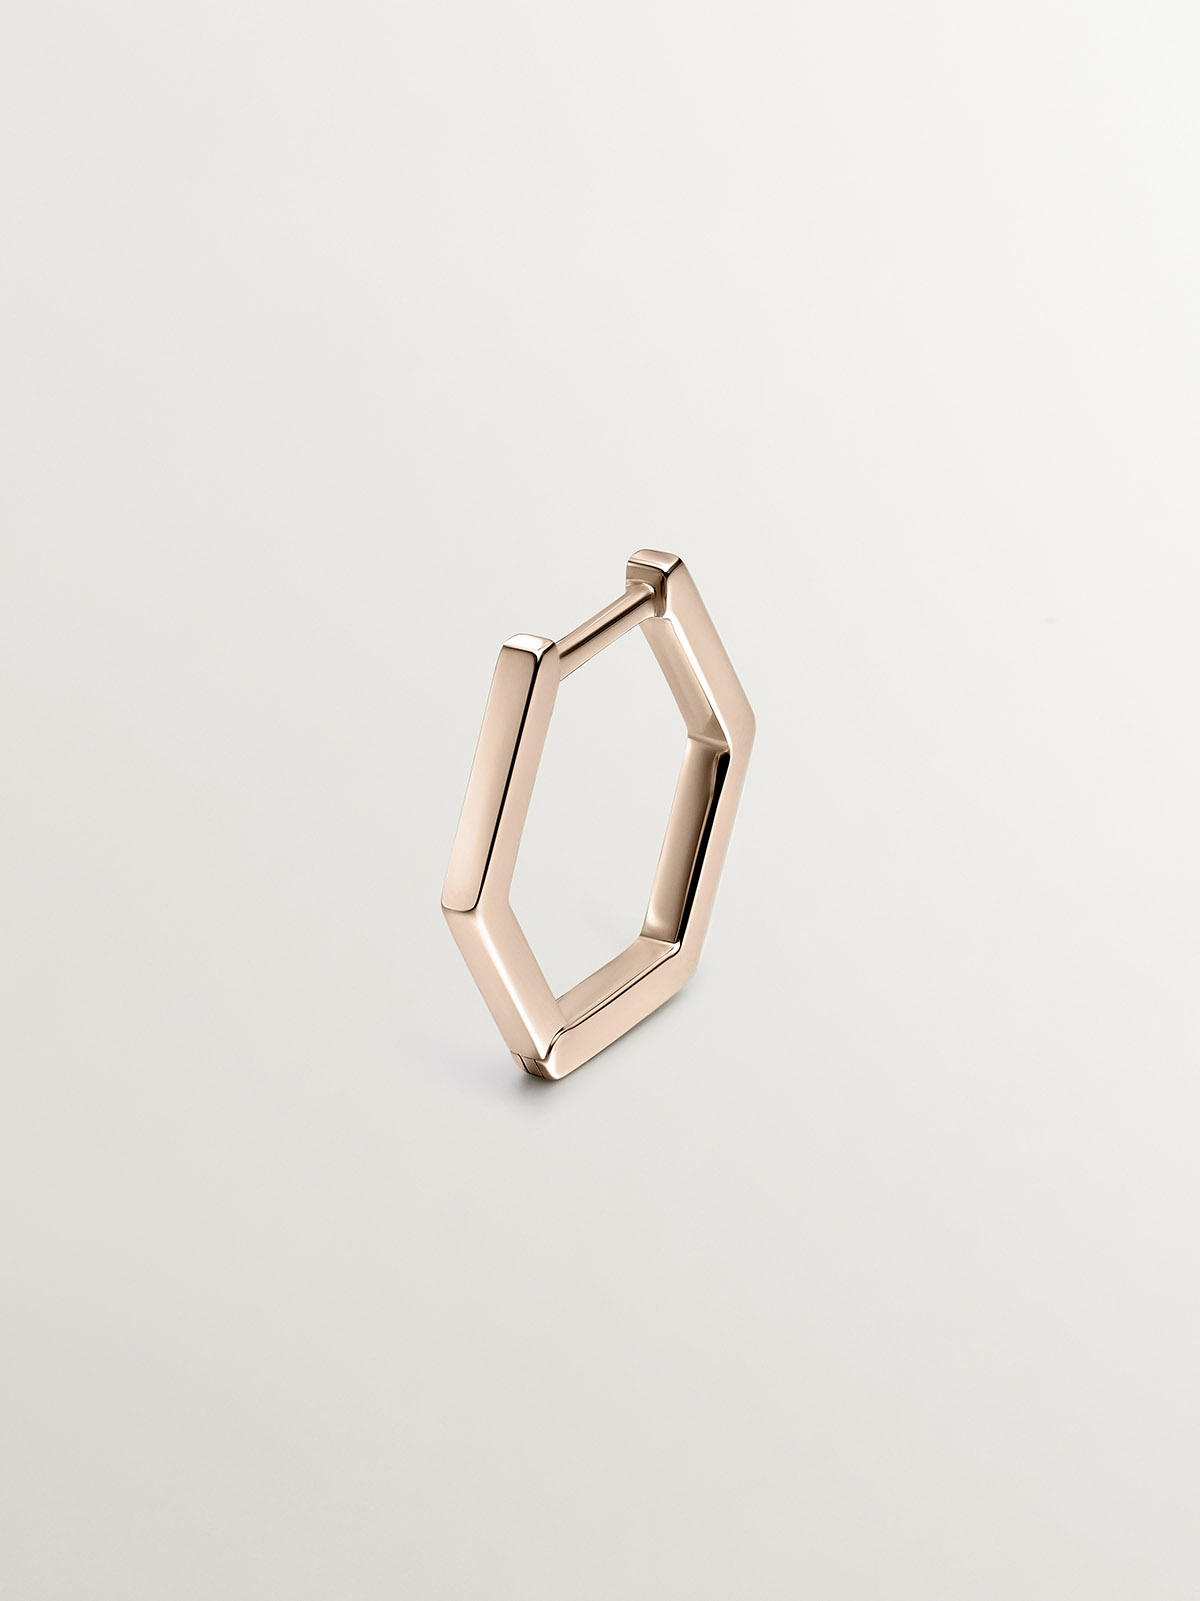 Pendiente individual de aro de oro rosa de 9K con forma hexagonal